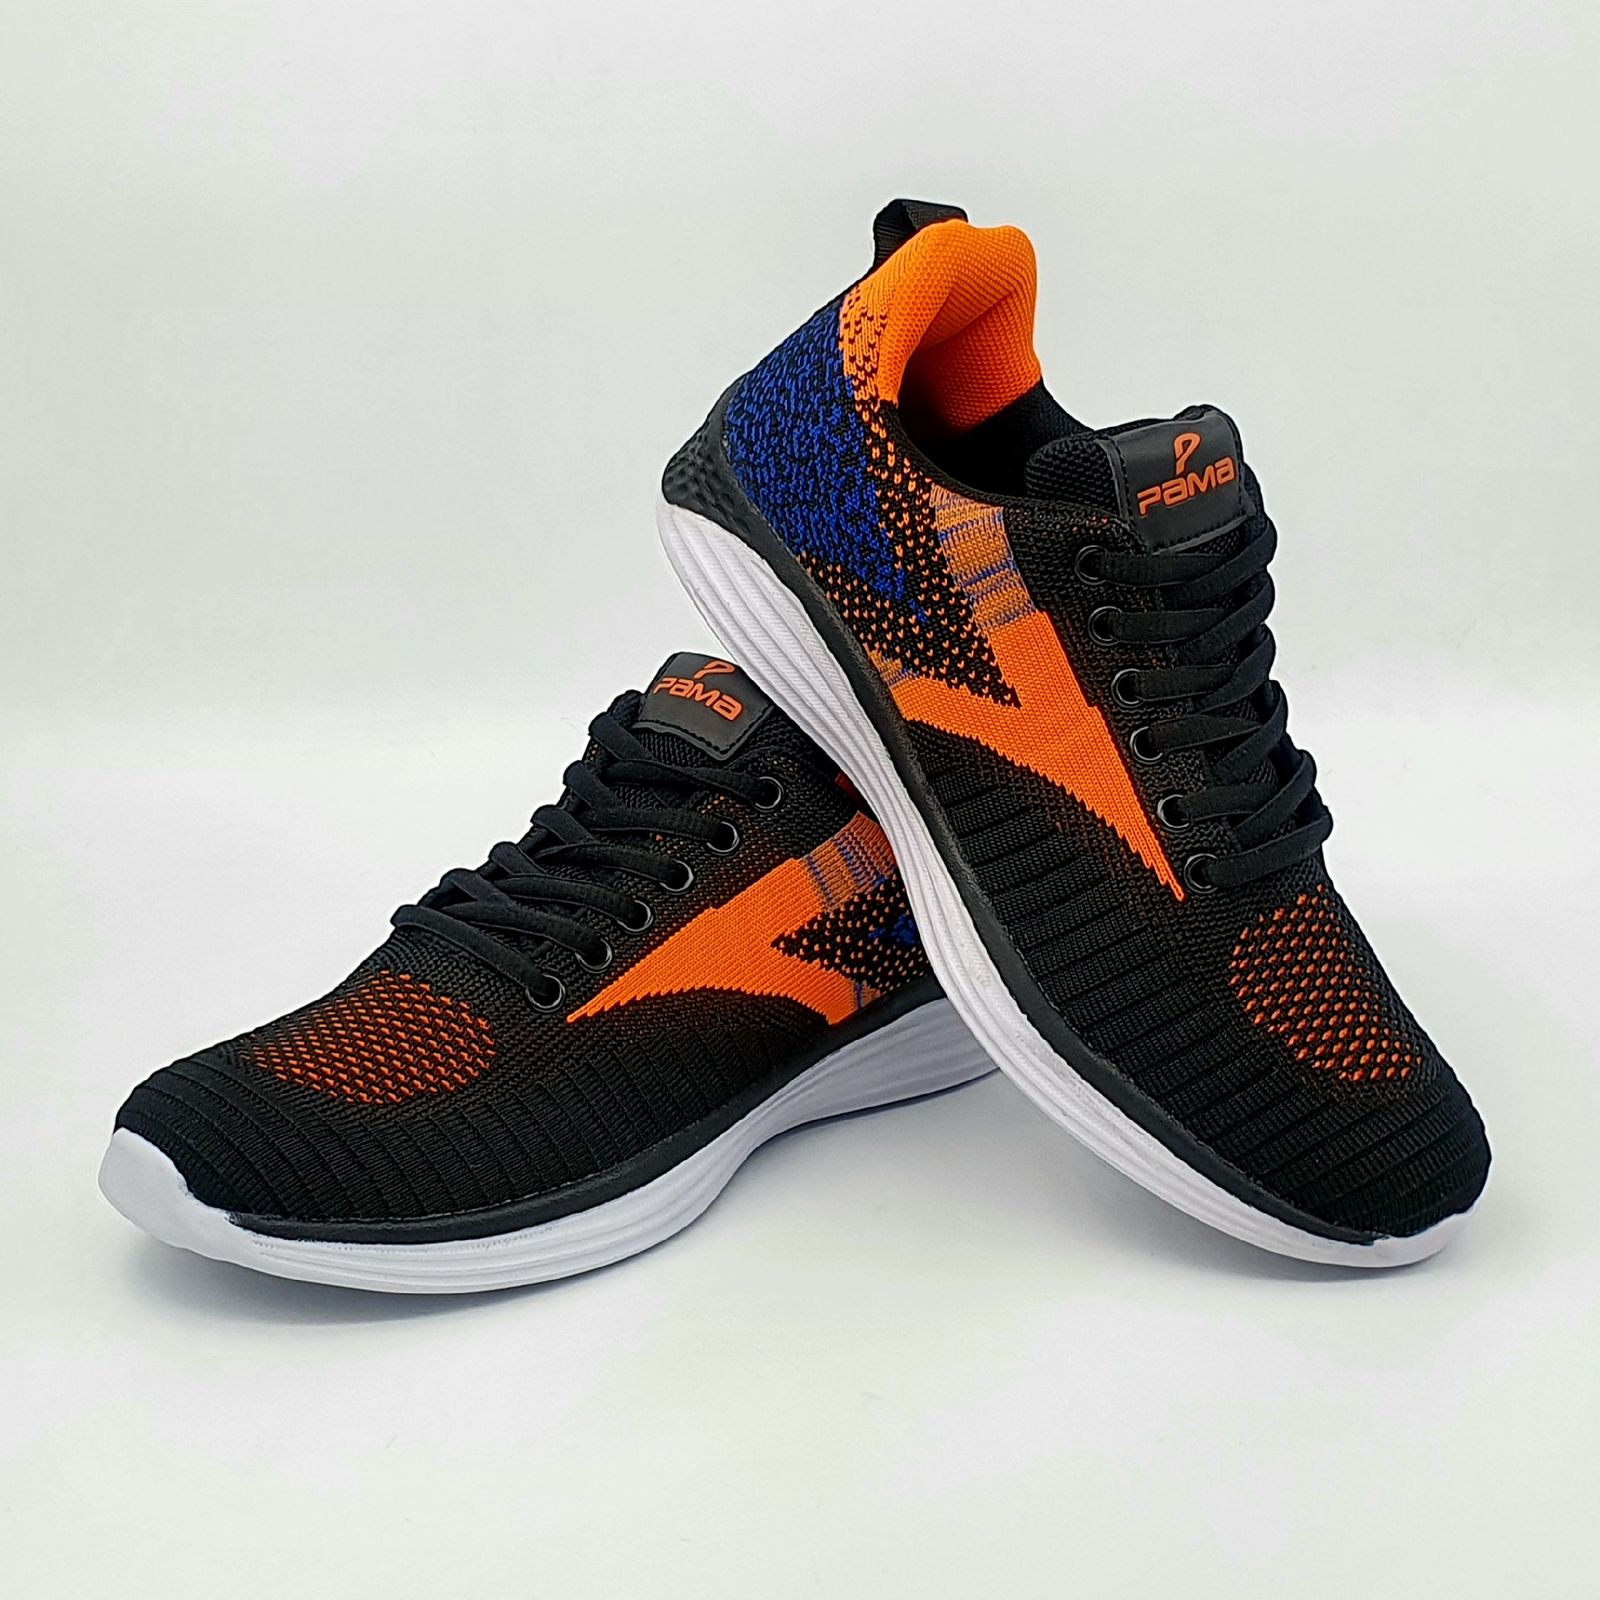 کفش مخصوص دویدن مردانه پاما مدل VR-828 کد 2-G1616 -  - 5